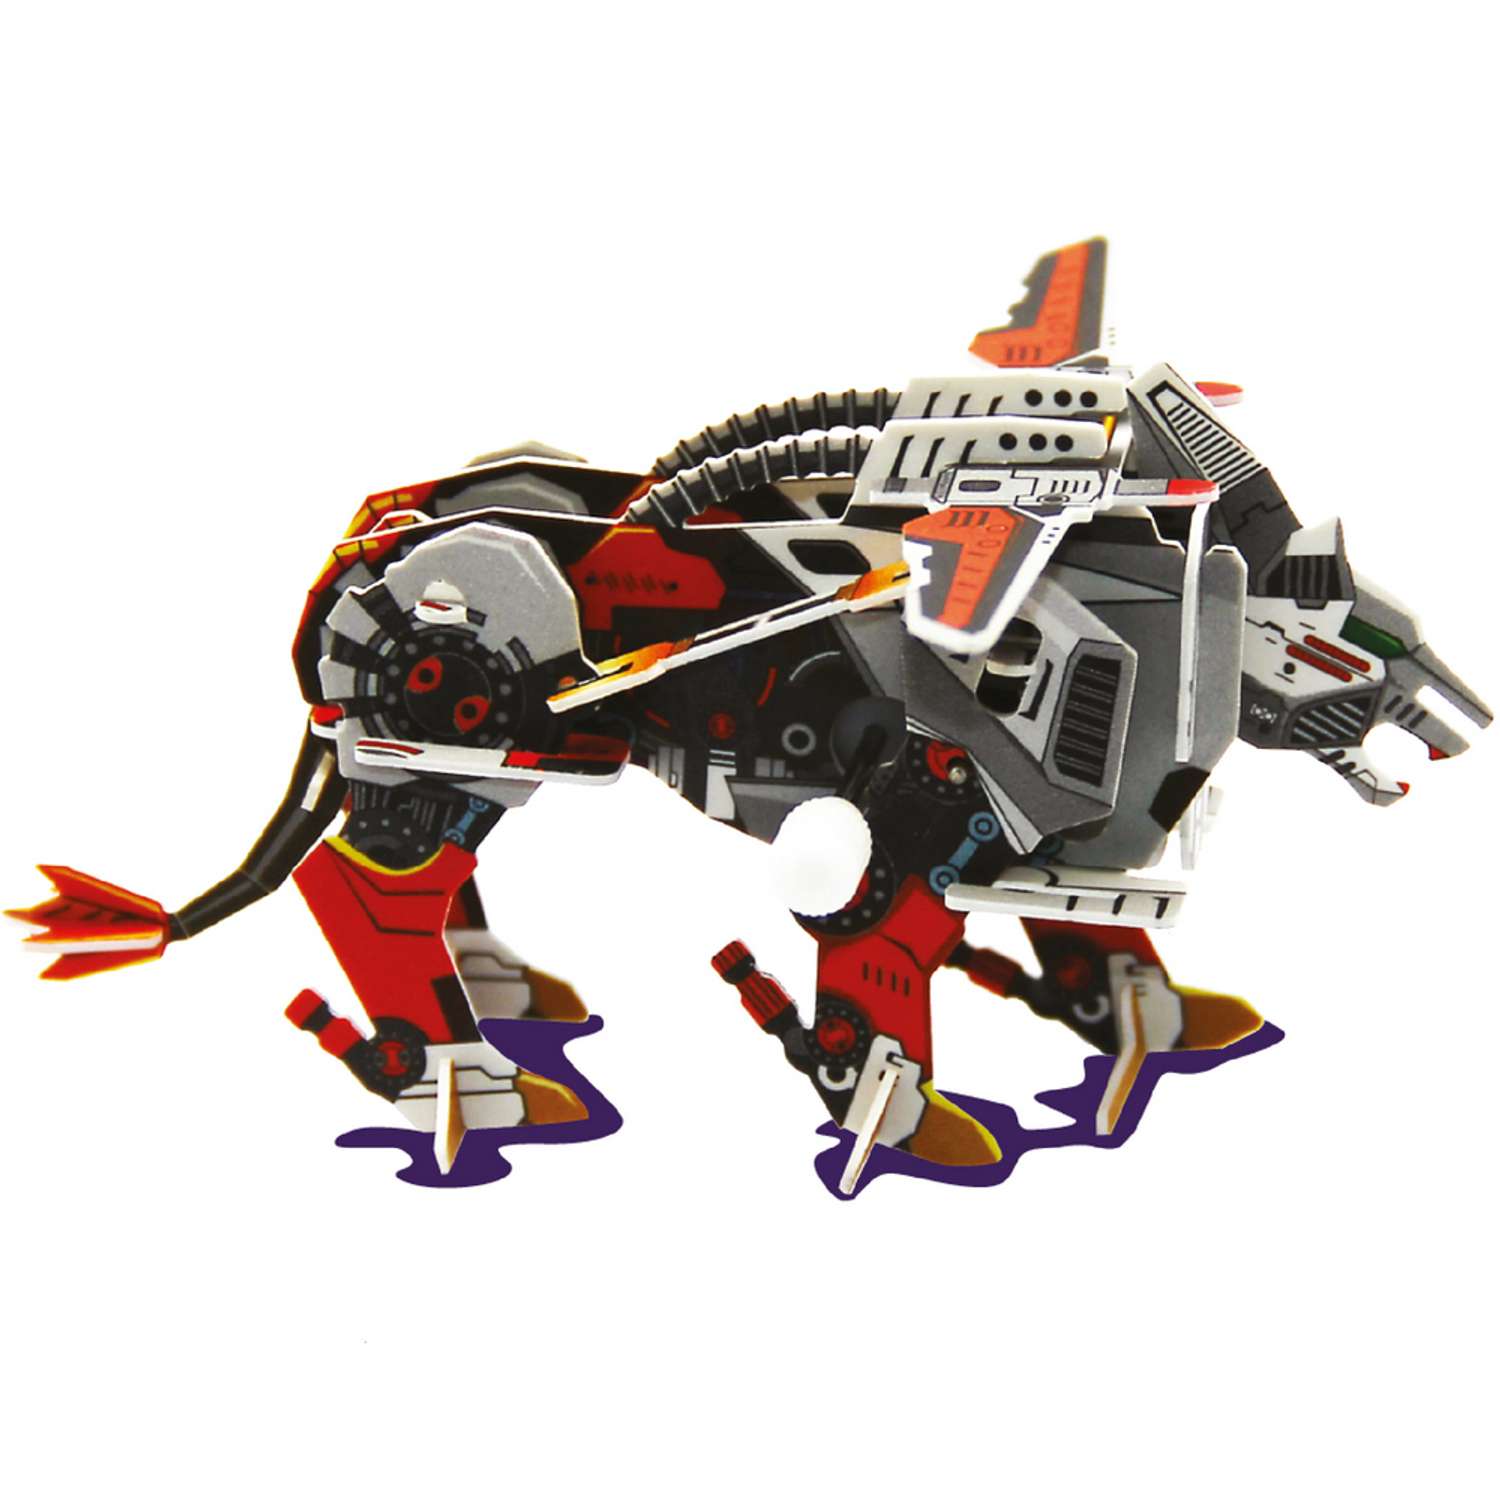 3D пазлы Bebelot Набор зверей 3 с заводным механизмом - фото 2